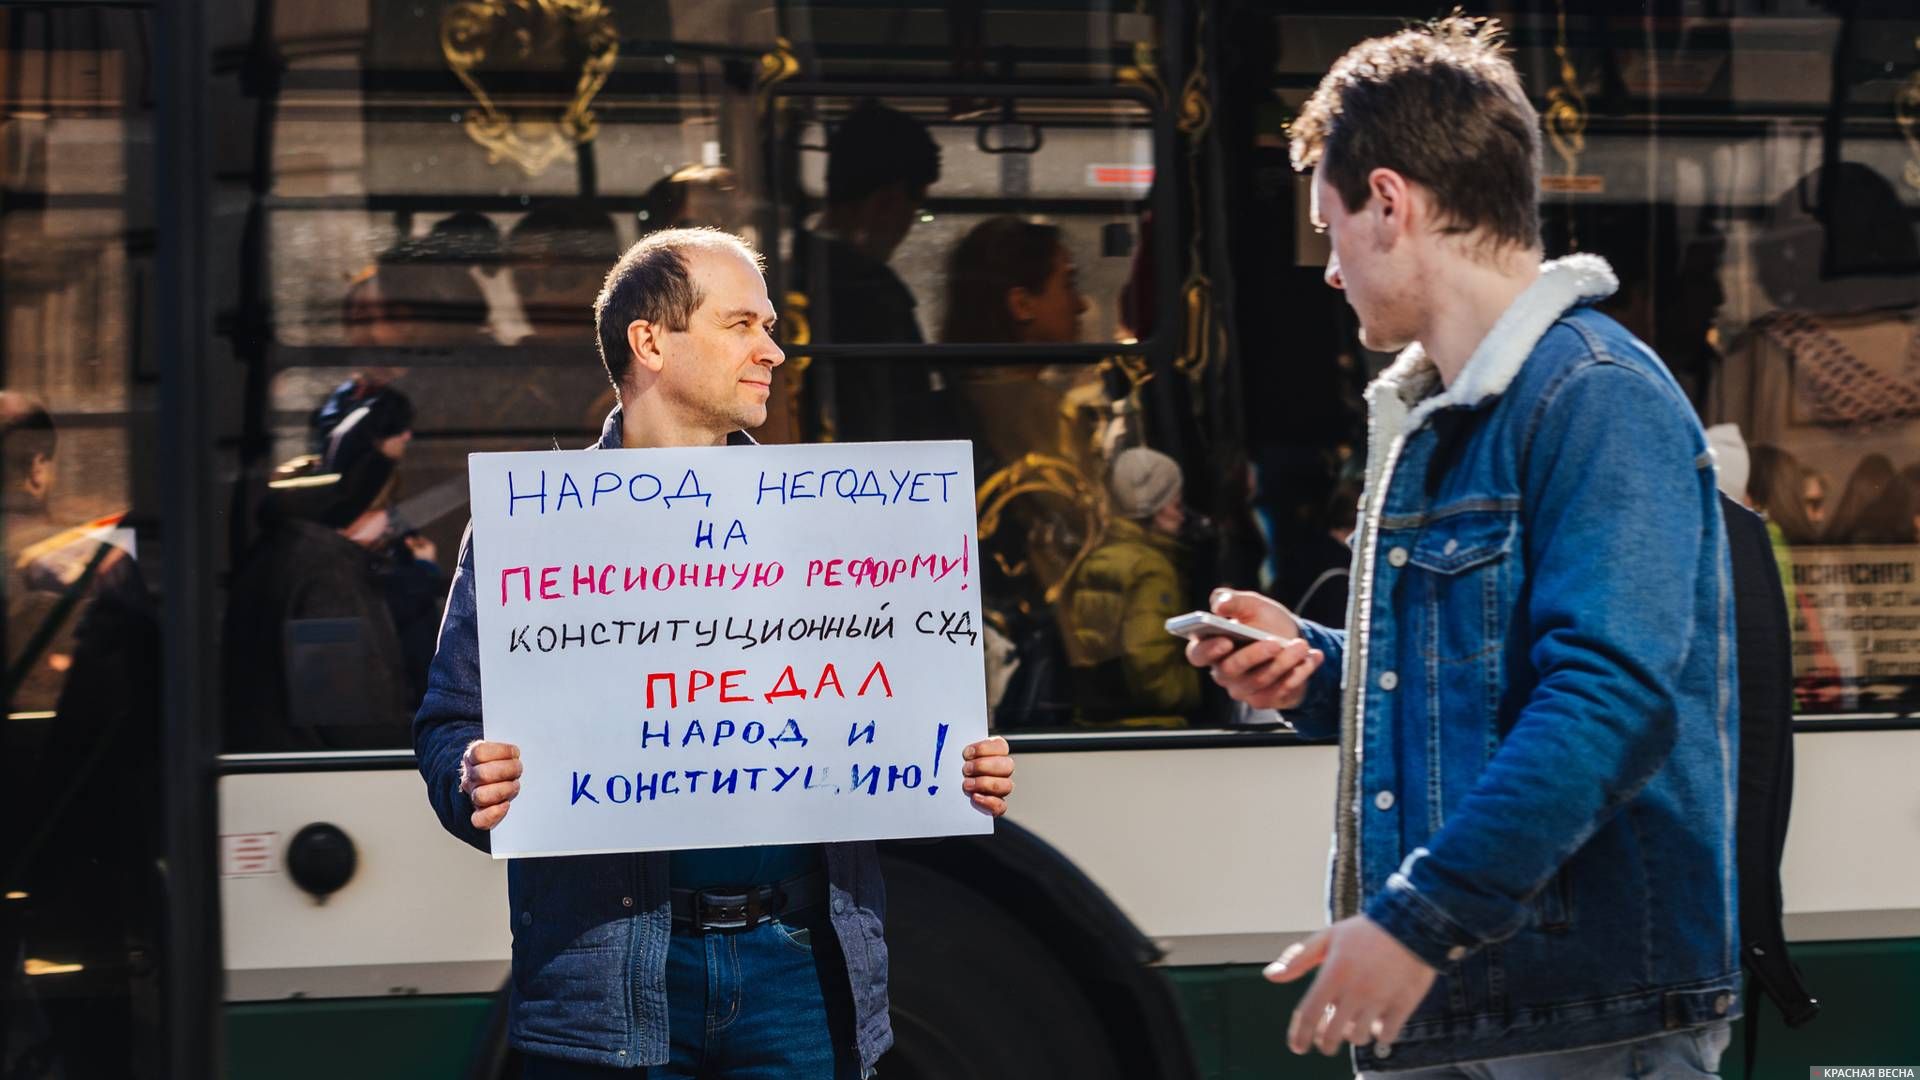 Пикет на Невском проспекте. Петербург. 06.04.2019